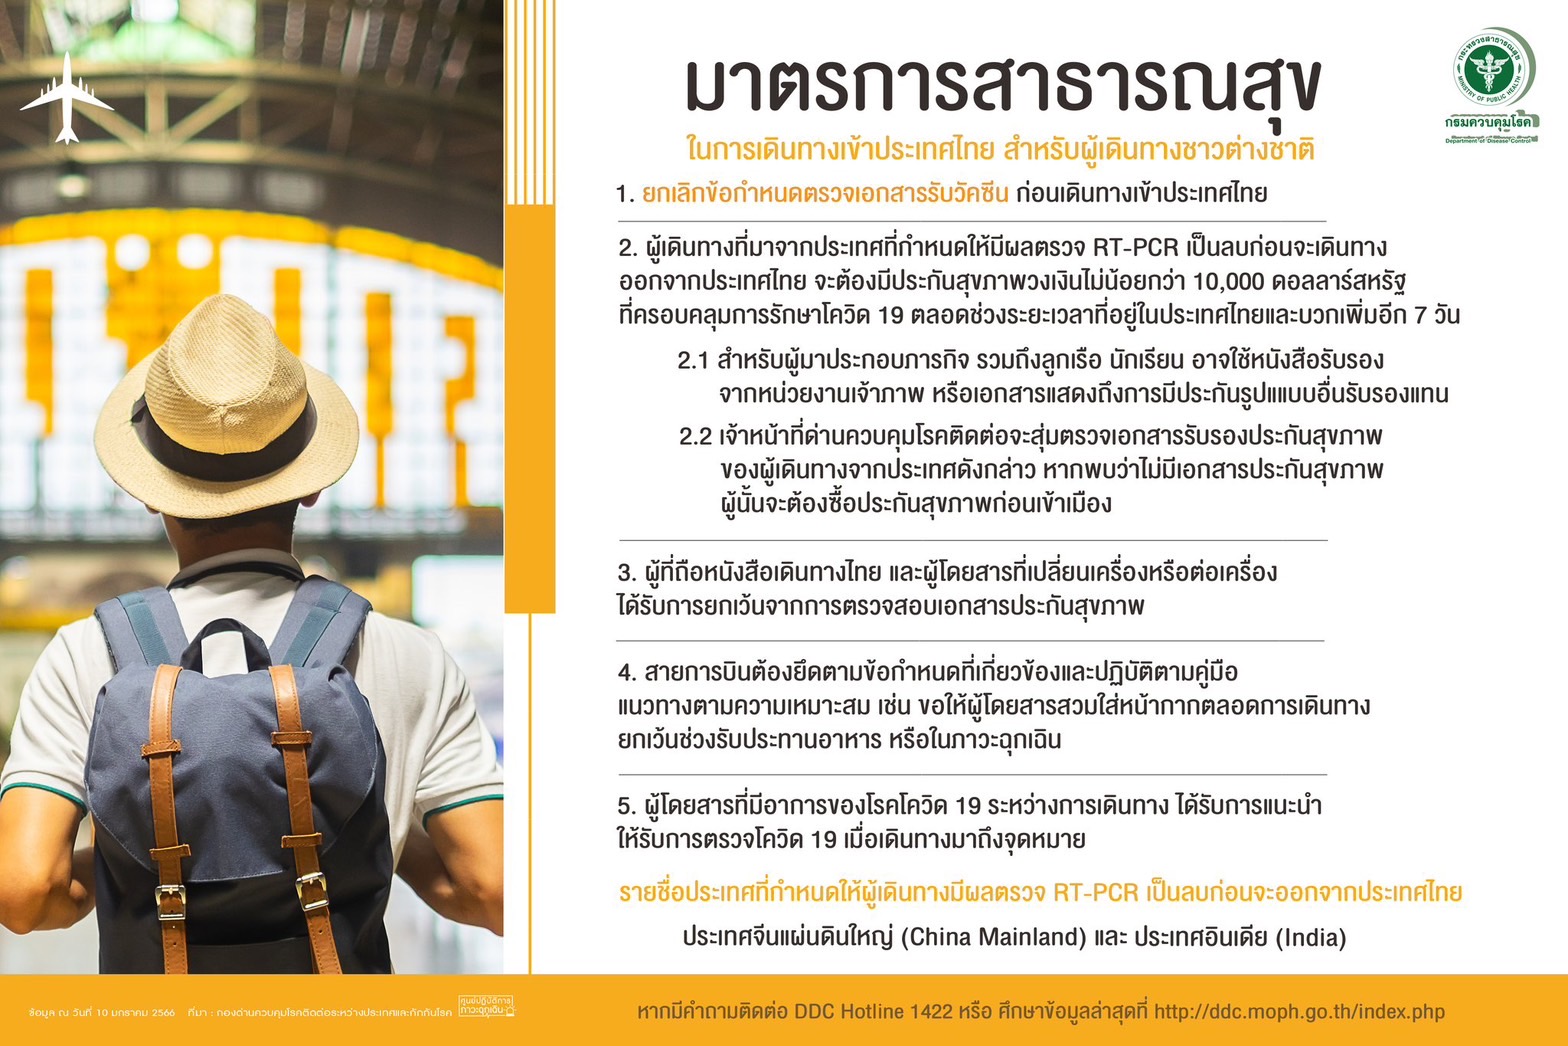 มาตรการสาธารณสุข ในการเข้าประเทศไทย1